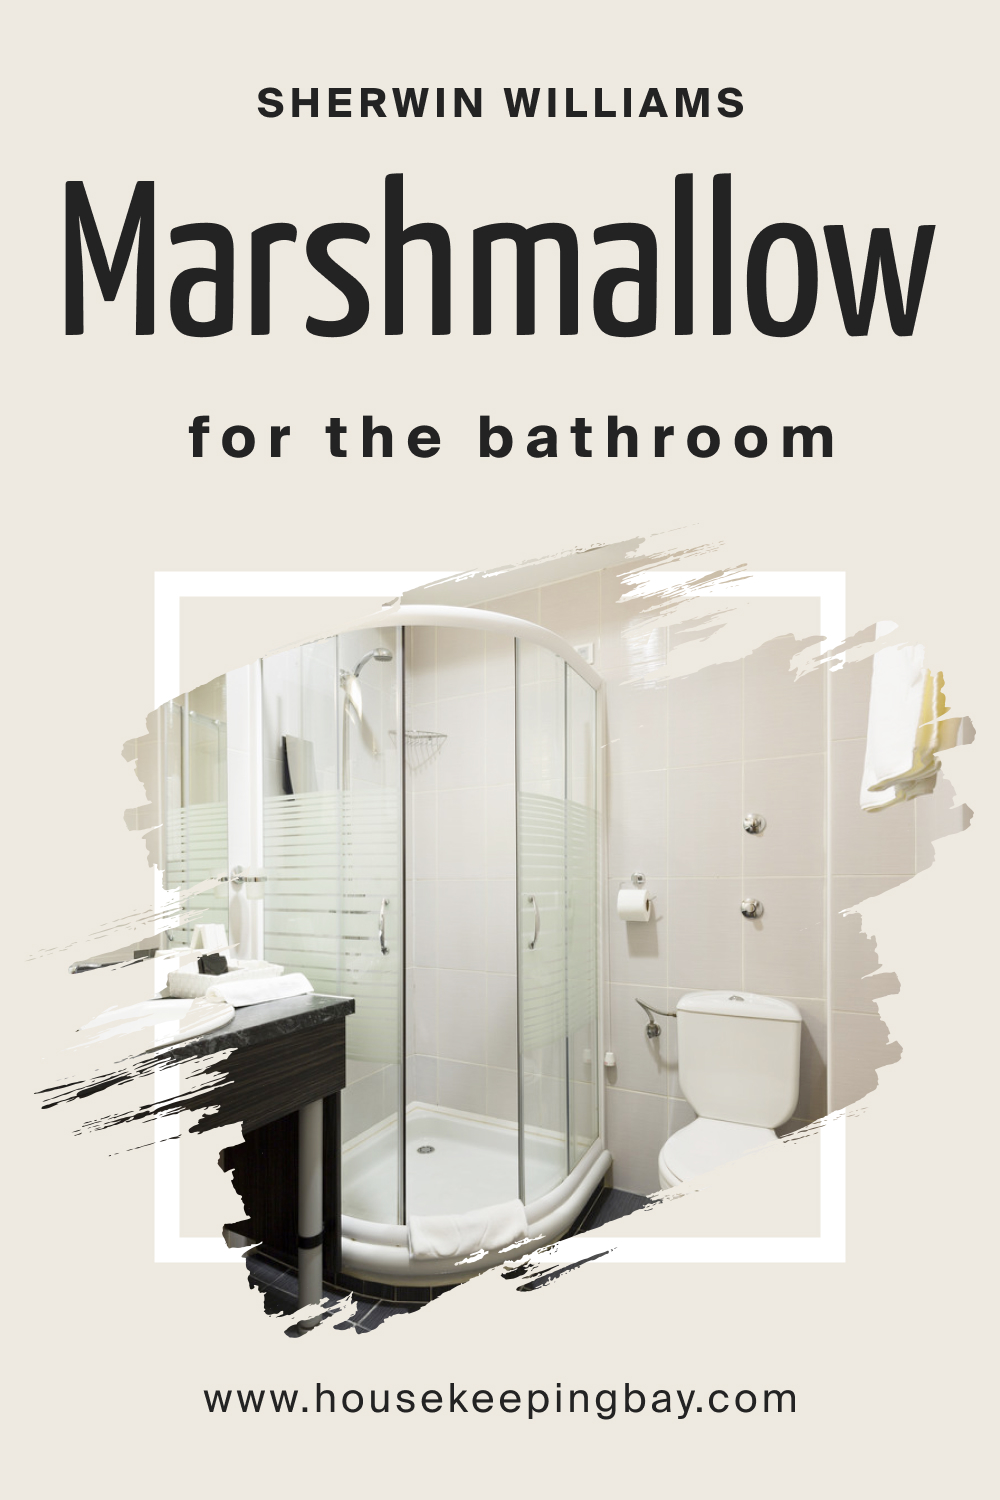 Sherwin Williams. SW Marshmallow in the Bathroom